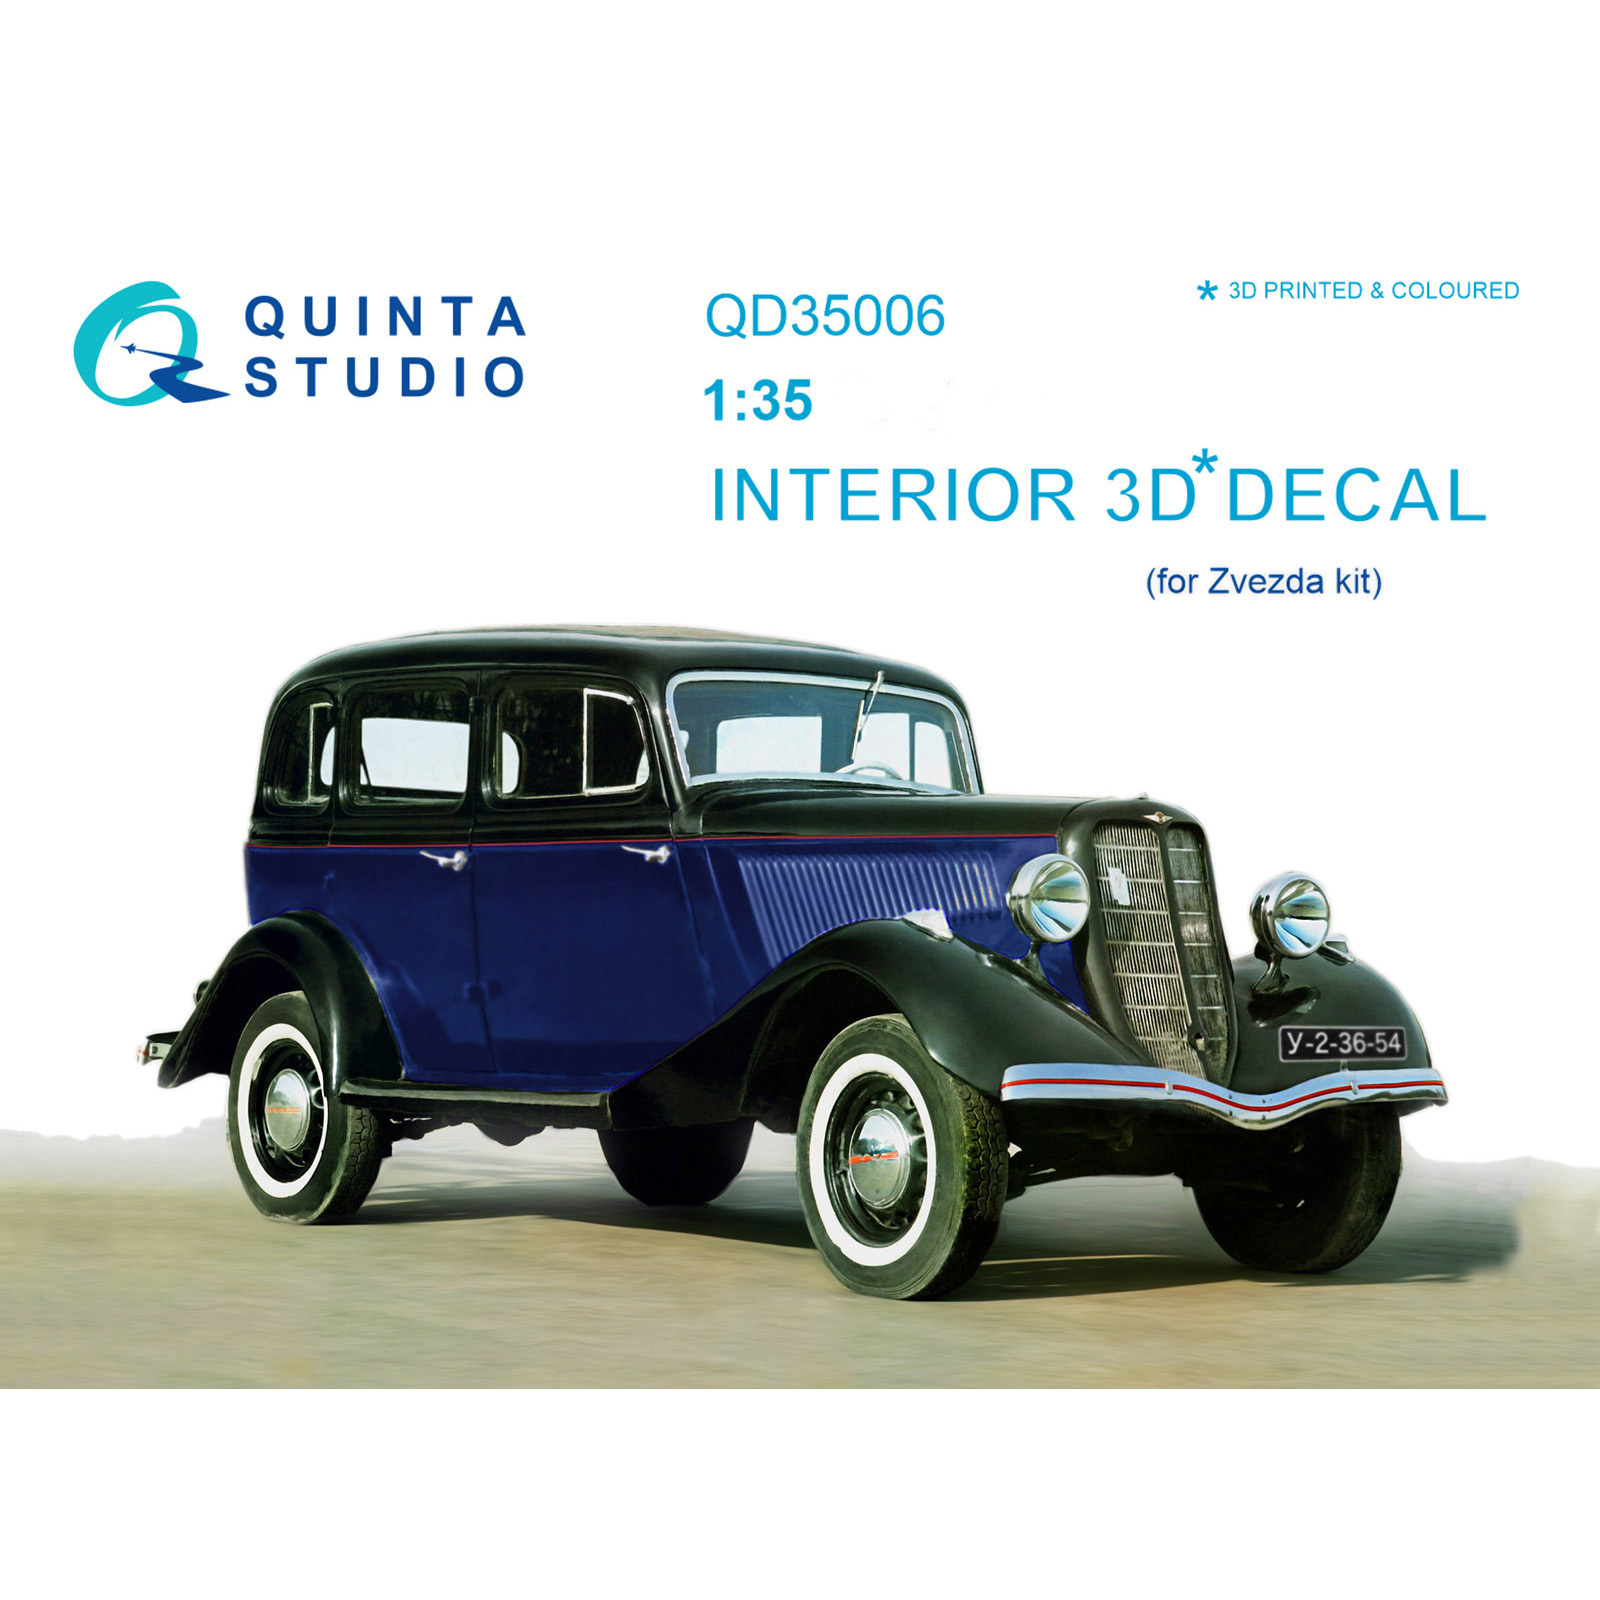 QD35006 Quinta Studio 1/35 3D Cabin Interior Decal for G@Z-M1 (for Zvezda Model)